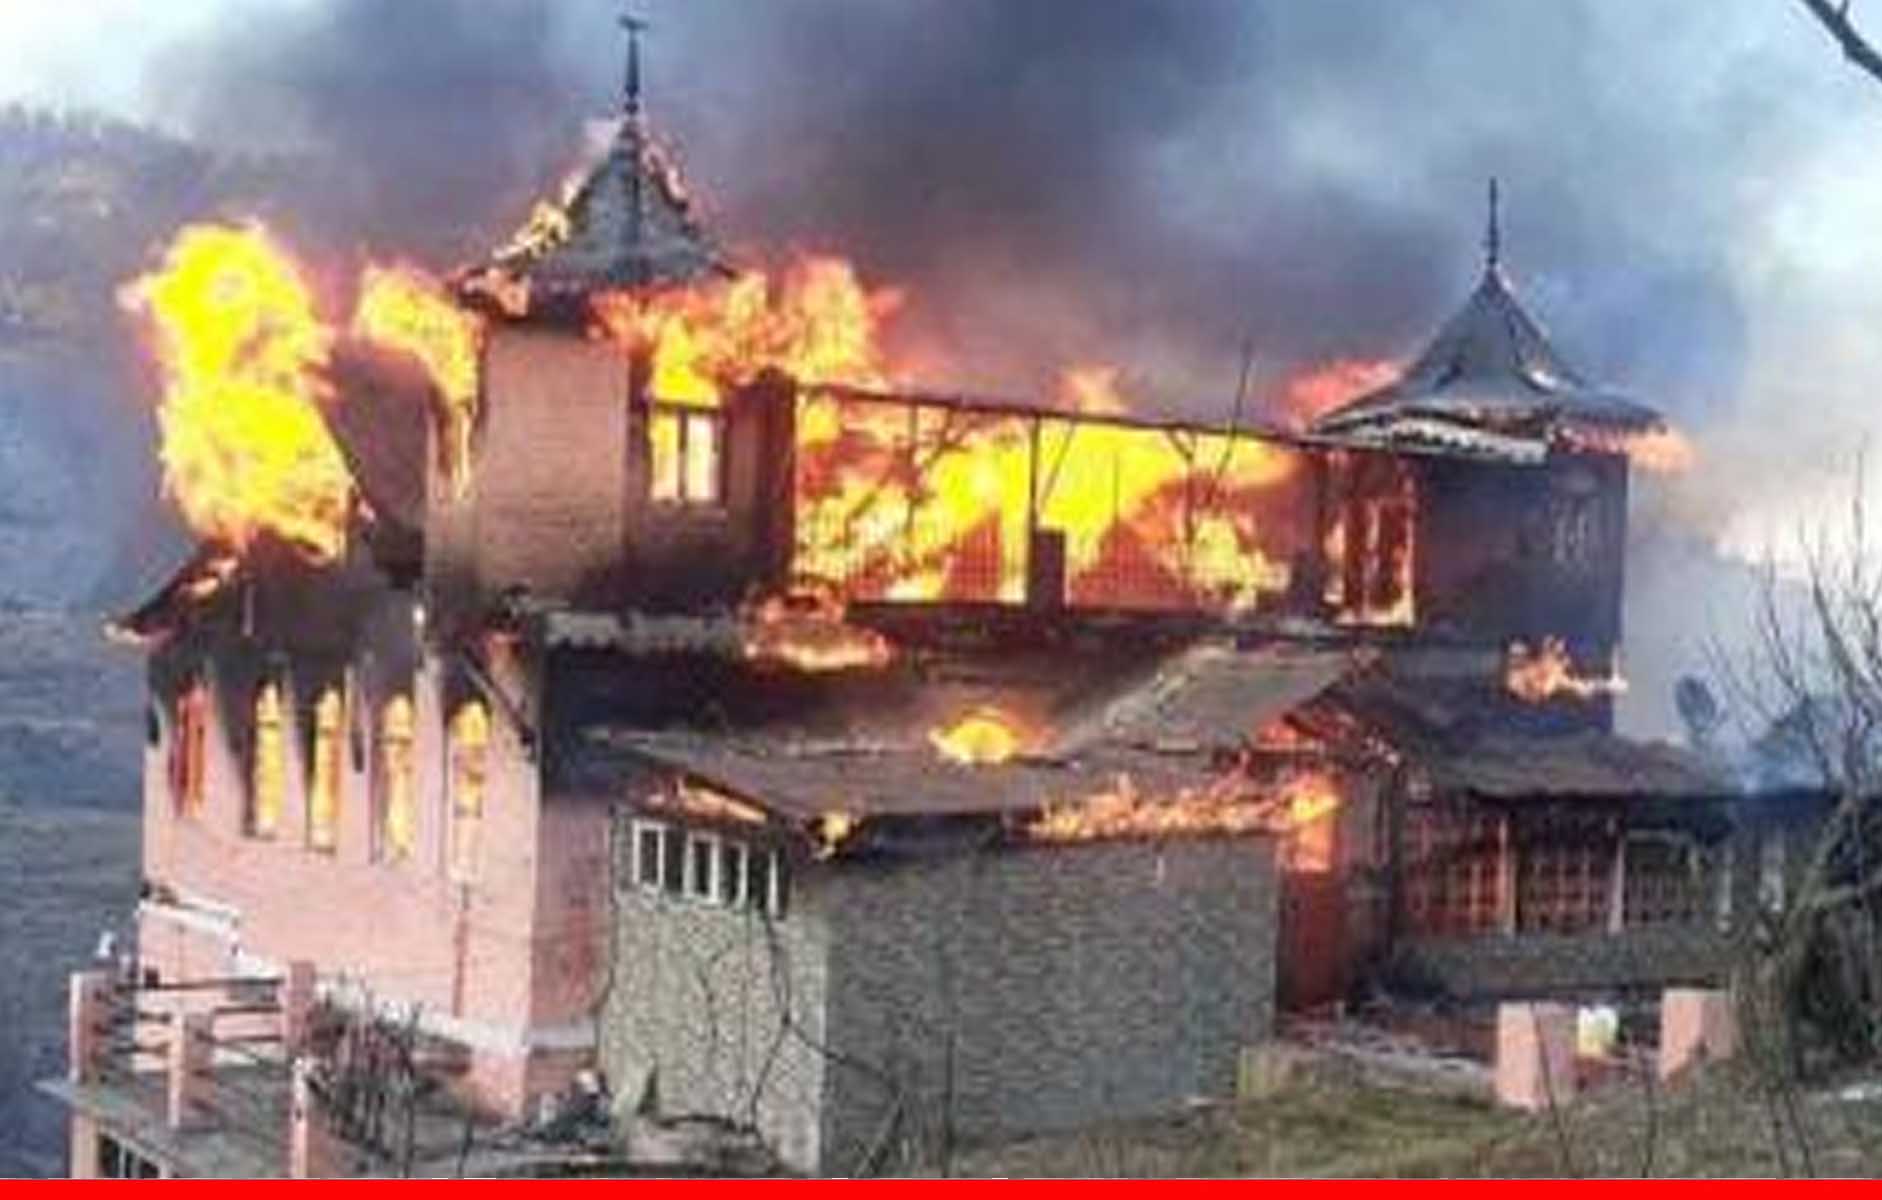 हिमाचल में भीषण अग्निकांड, एक ही परिवार के 3 बच्चों सहित 4 लोग जिंदा जले